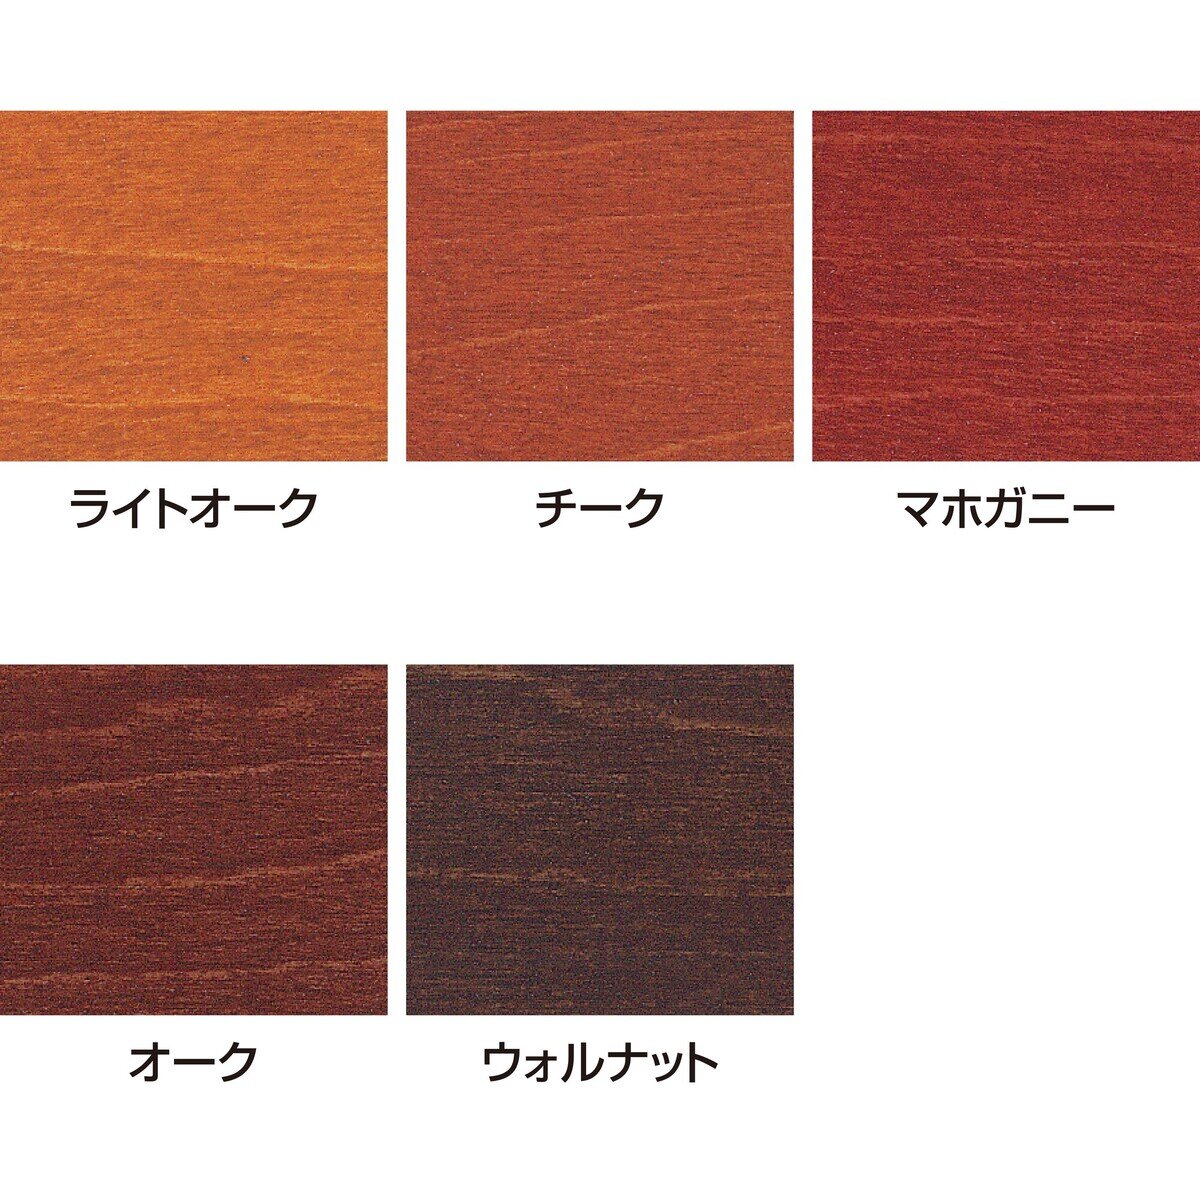 サンデーペイント 油性木部用塗料 カラーステイン 14L | Costco Japan